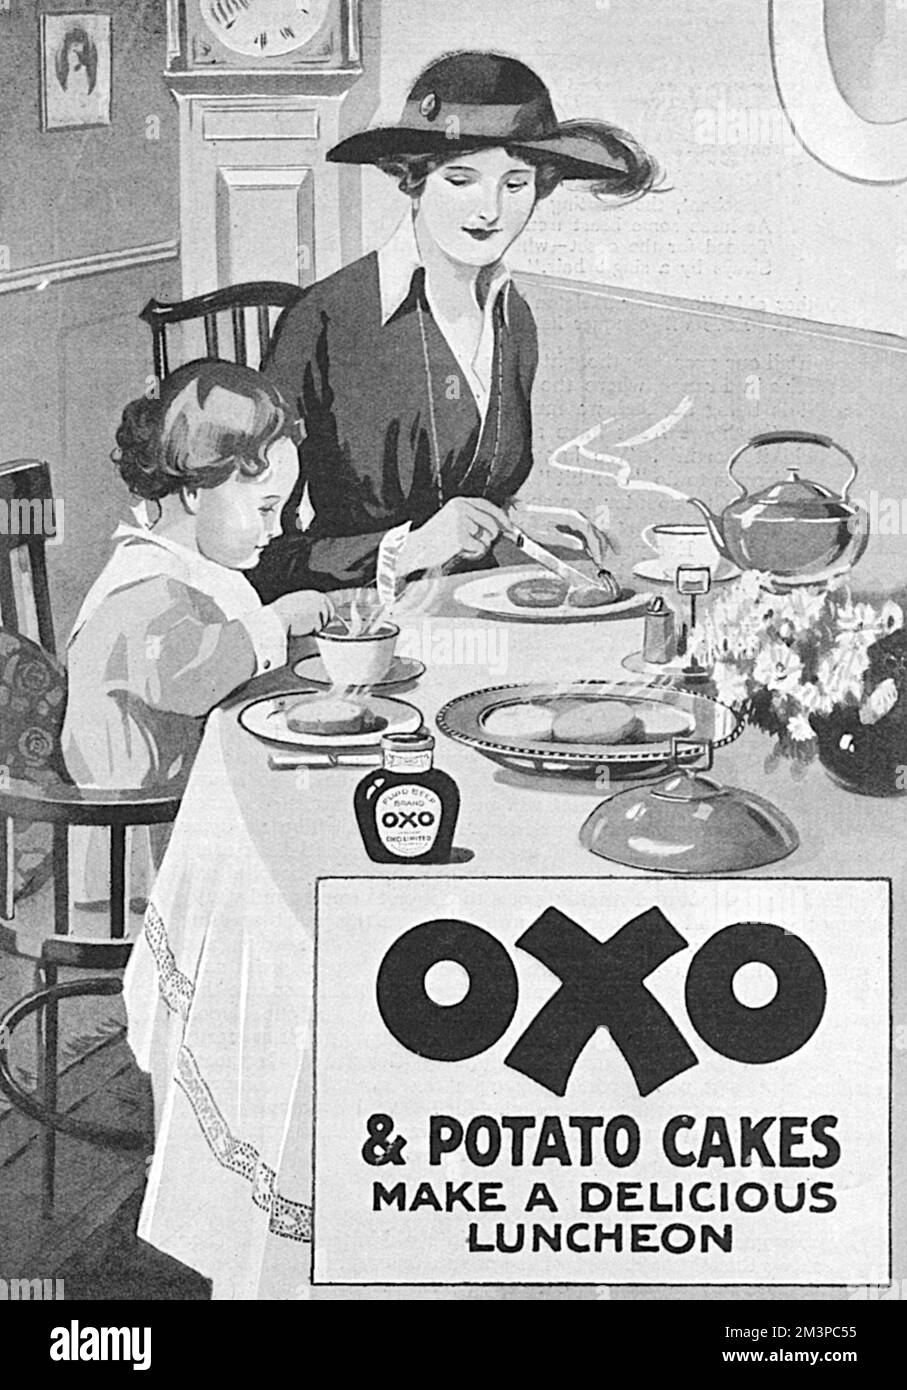 Werbung für Oxo, die Oxo und Kartoffelkuchen als köstliches (und wirtschaftliches) Mittagessen während des Ersten Weltkriegs vorschlägt. Datum: 1918 Stockfoto